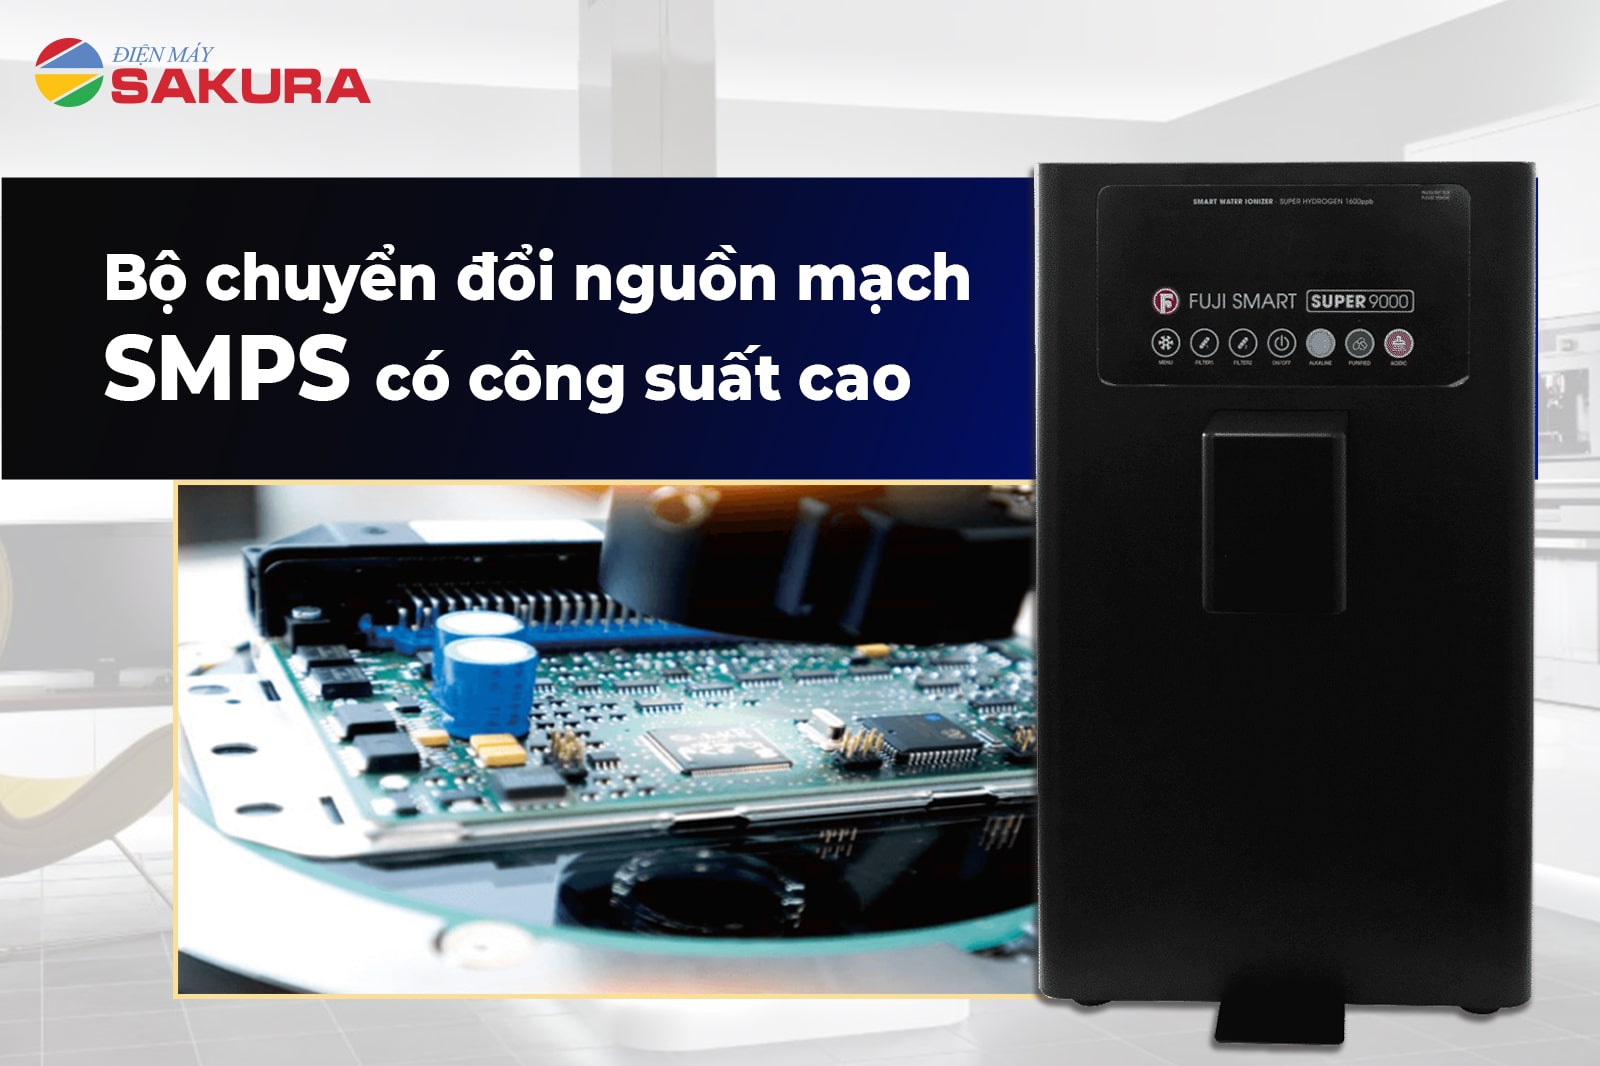 Máy lọc nước Fuji Smart Super 9000 bộ chuyển đổi nguồn mạch SMPS có công suất cao